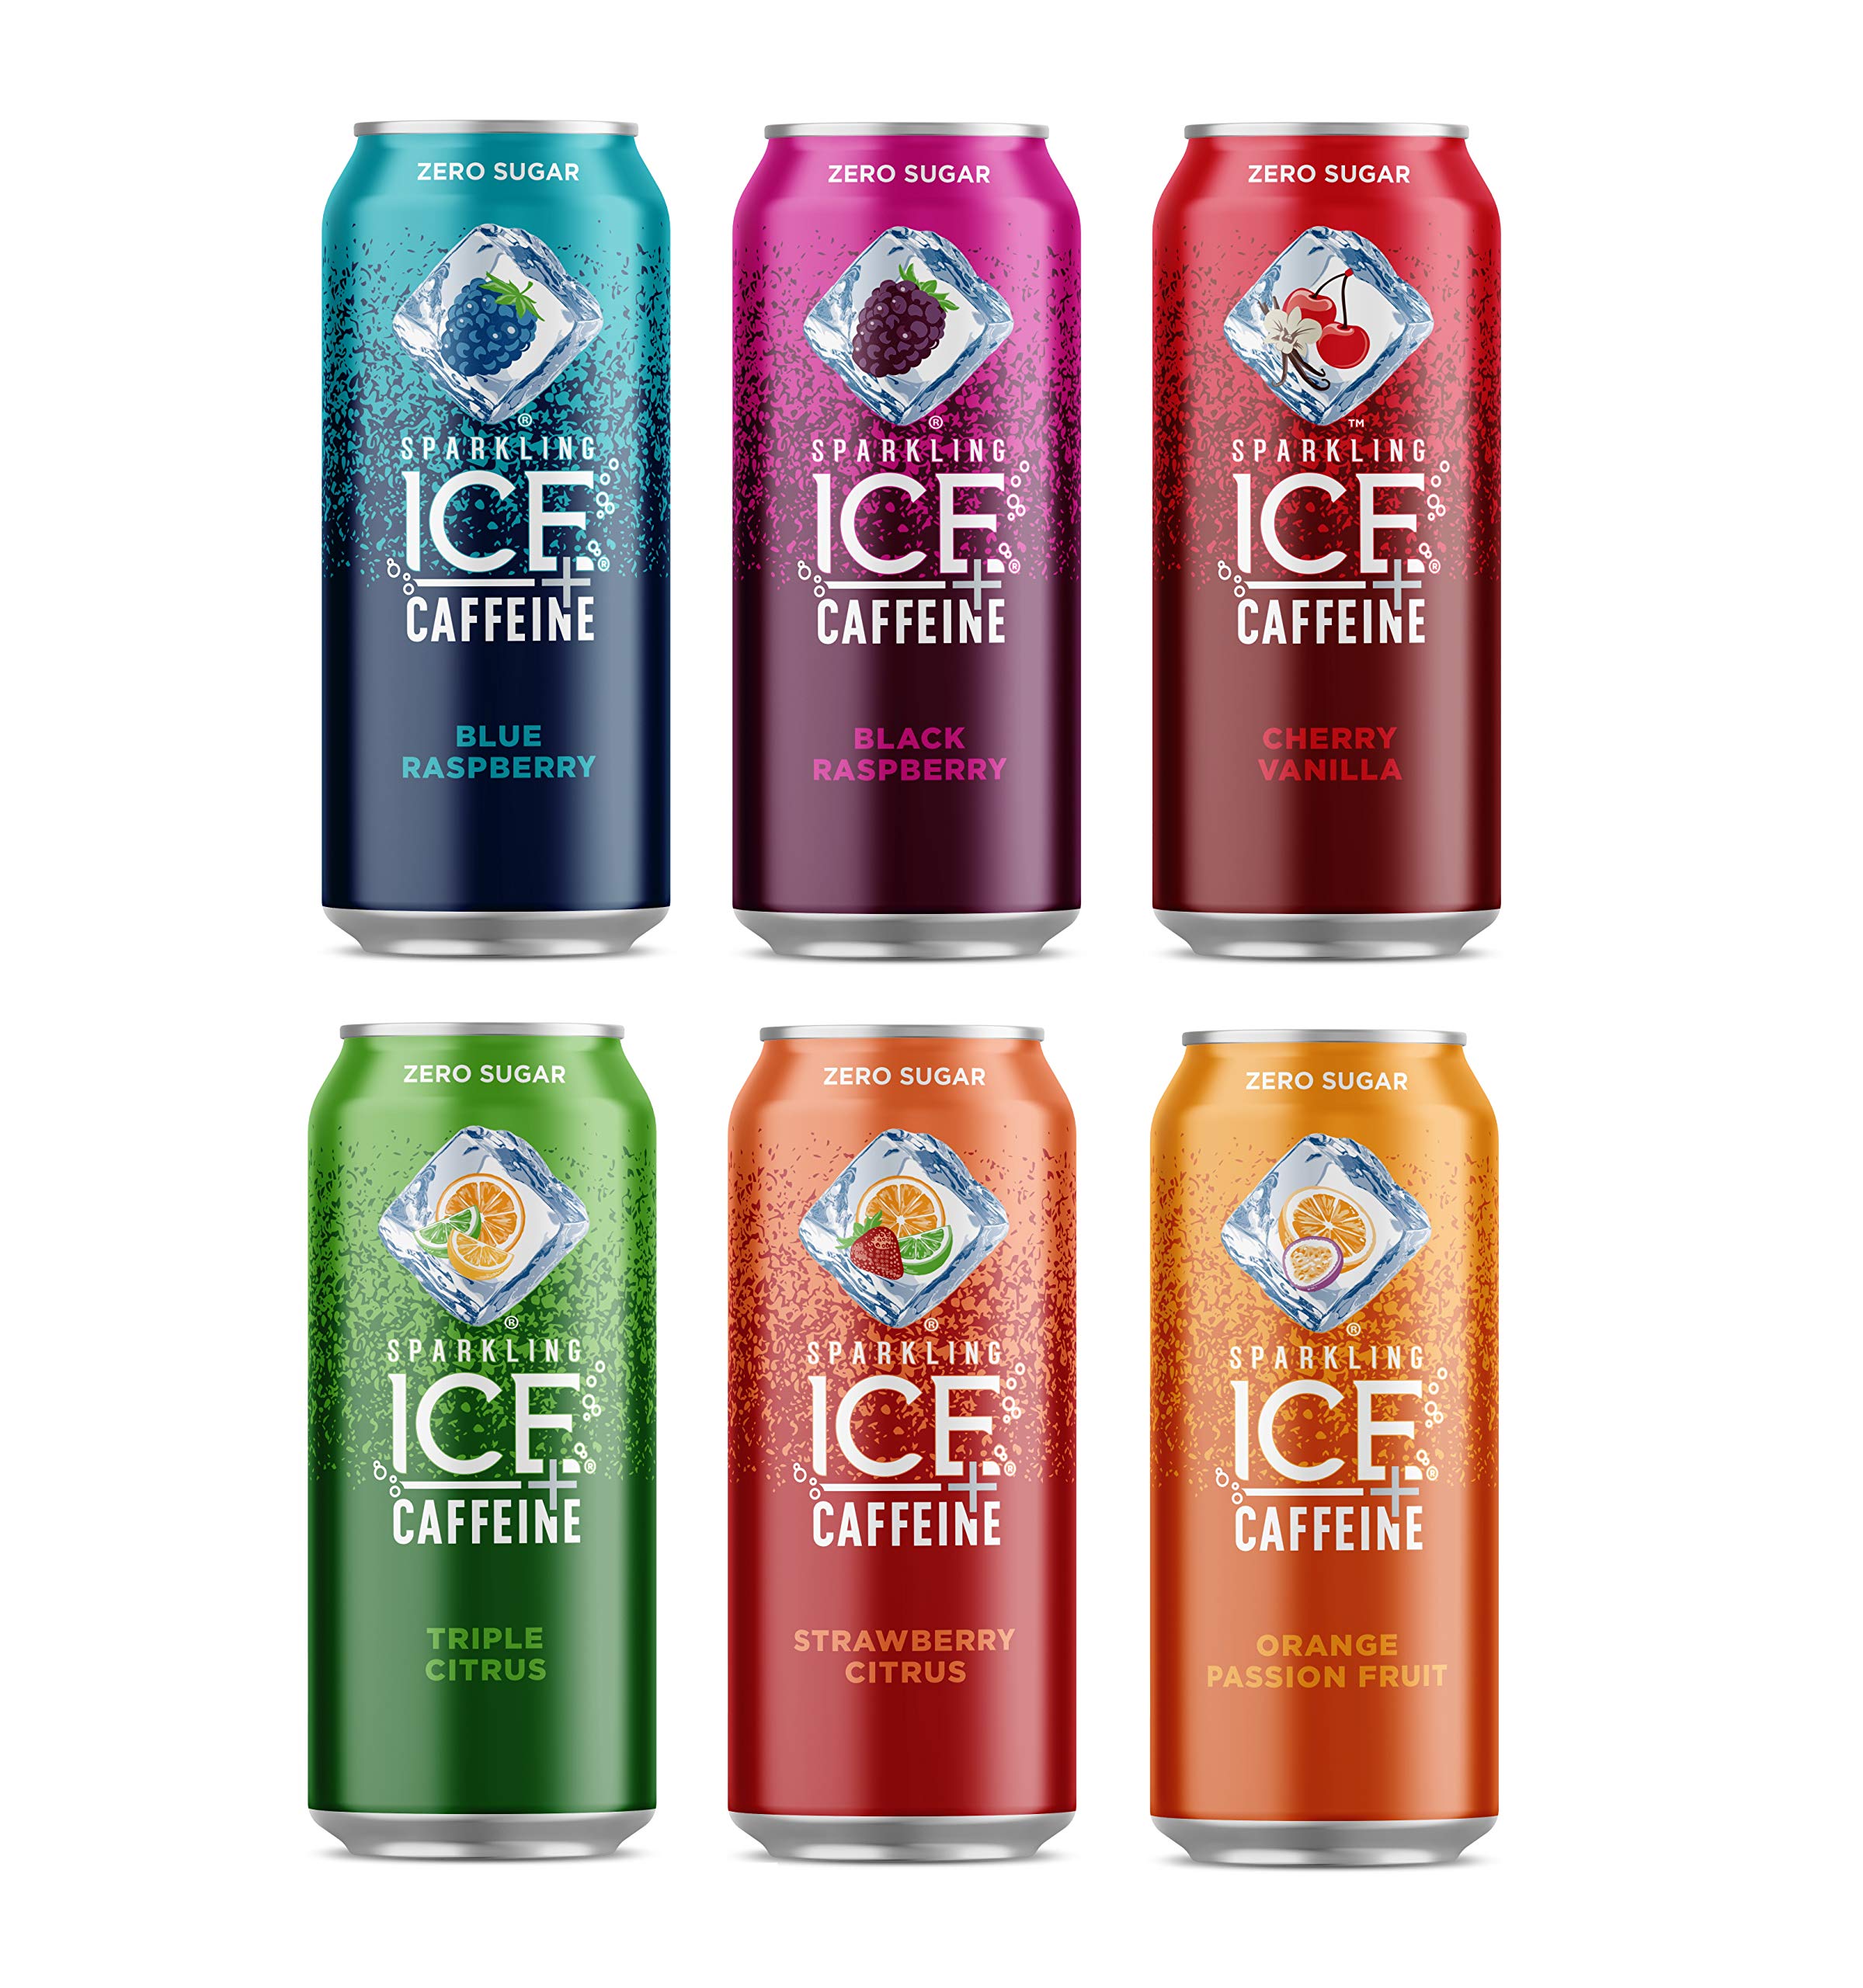 Sparkling Ice +Caffeine Zero Sugar Flavored Sparkling Water, Blue Raspberry  Sparkling Water, 16 Fl Oz Can 